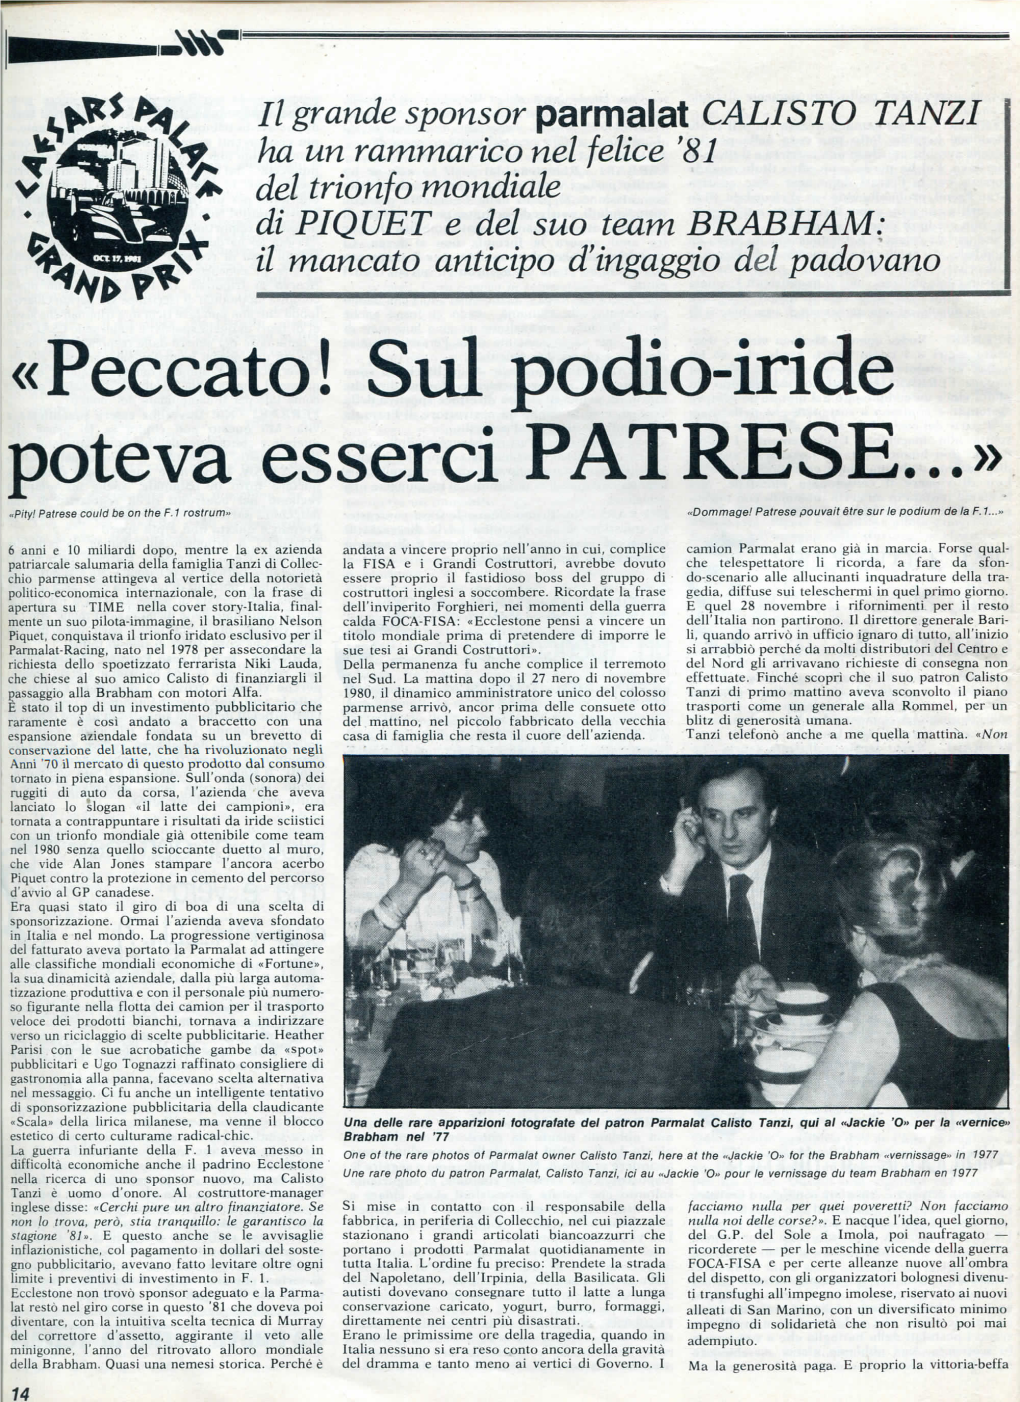 Qg& Il Mancato Anticipo D'ingaggio Del Padovano «Peccato! Sul Podio-Iride Poteva Esserci PATRESE...» «Pity! Patrese Could Be on Thè F